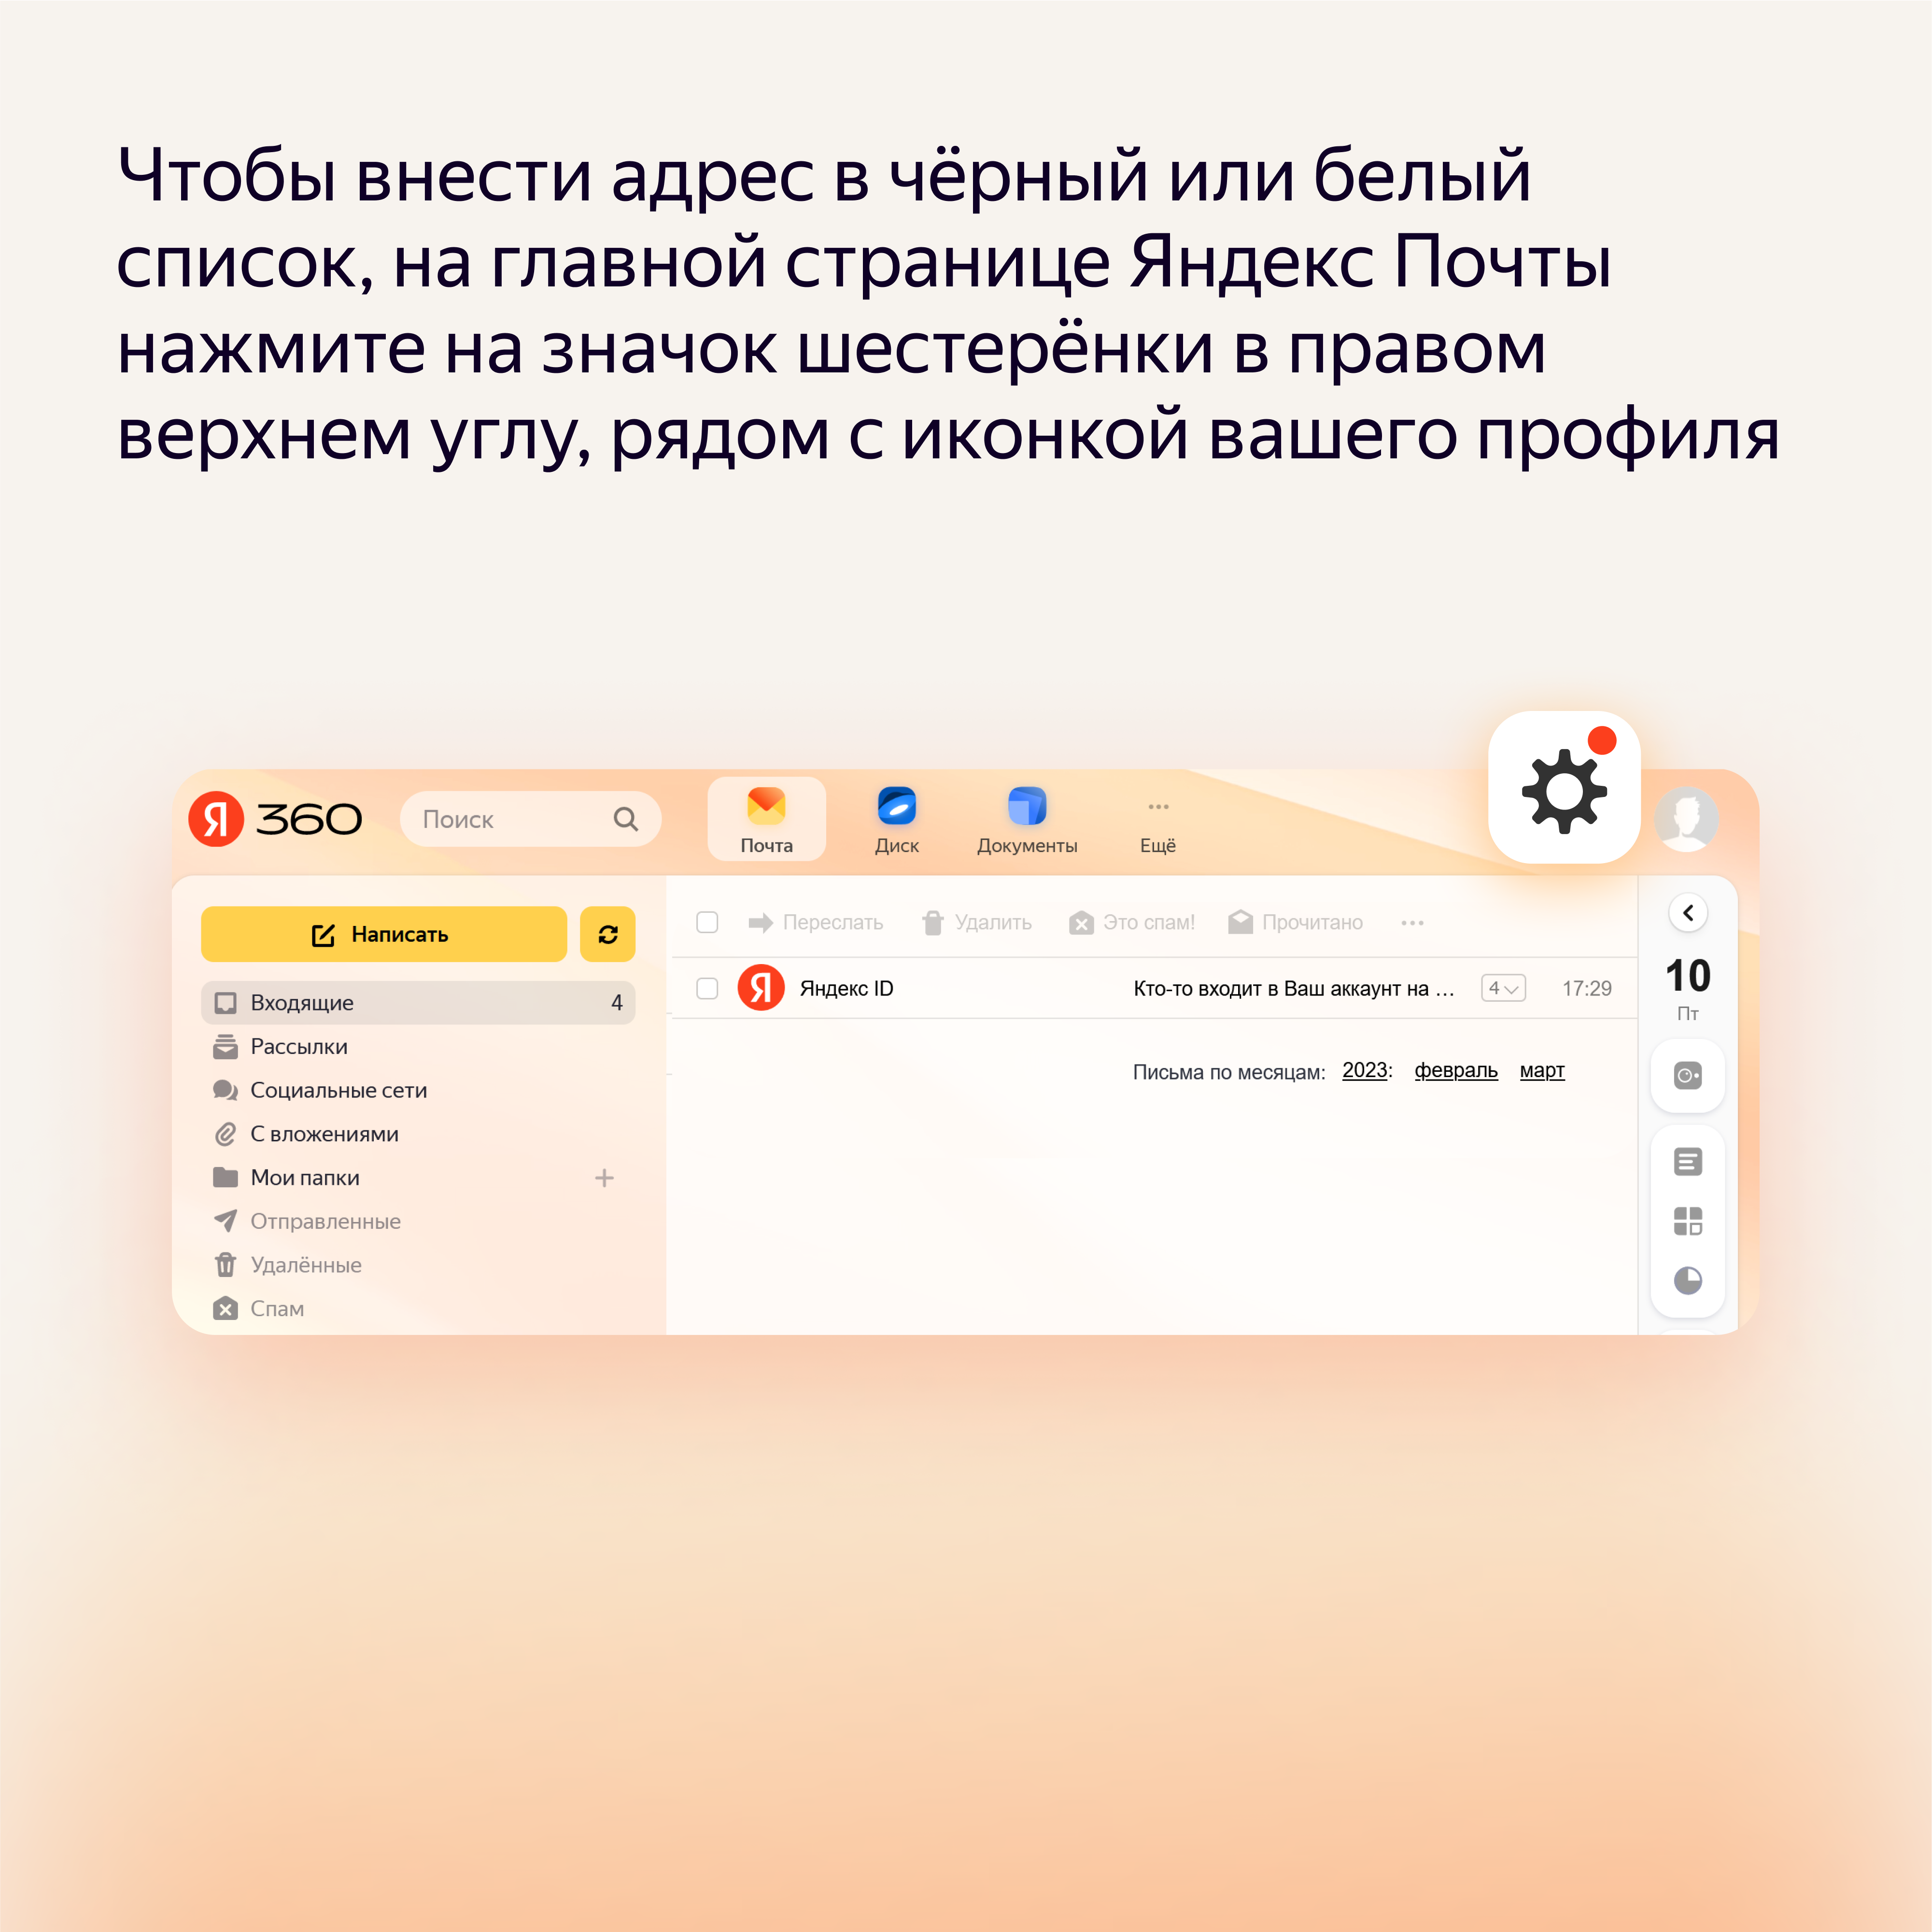 Группы контактов в ростовсэс.рф — Блог Яндекса